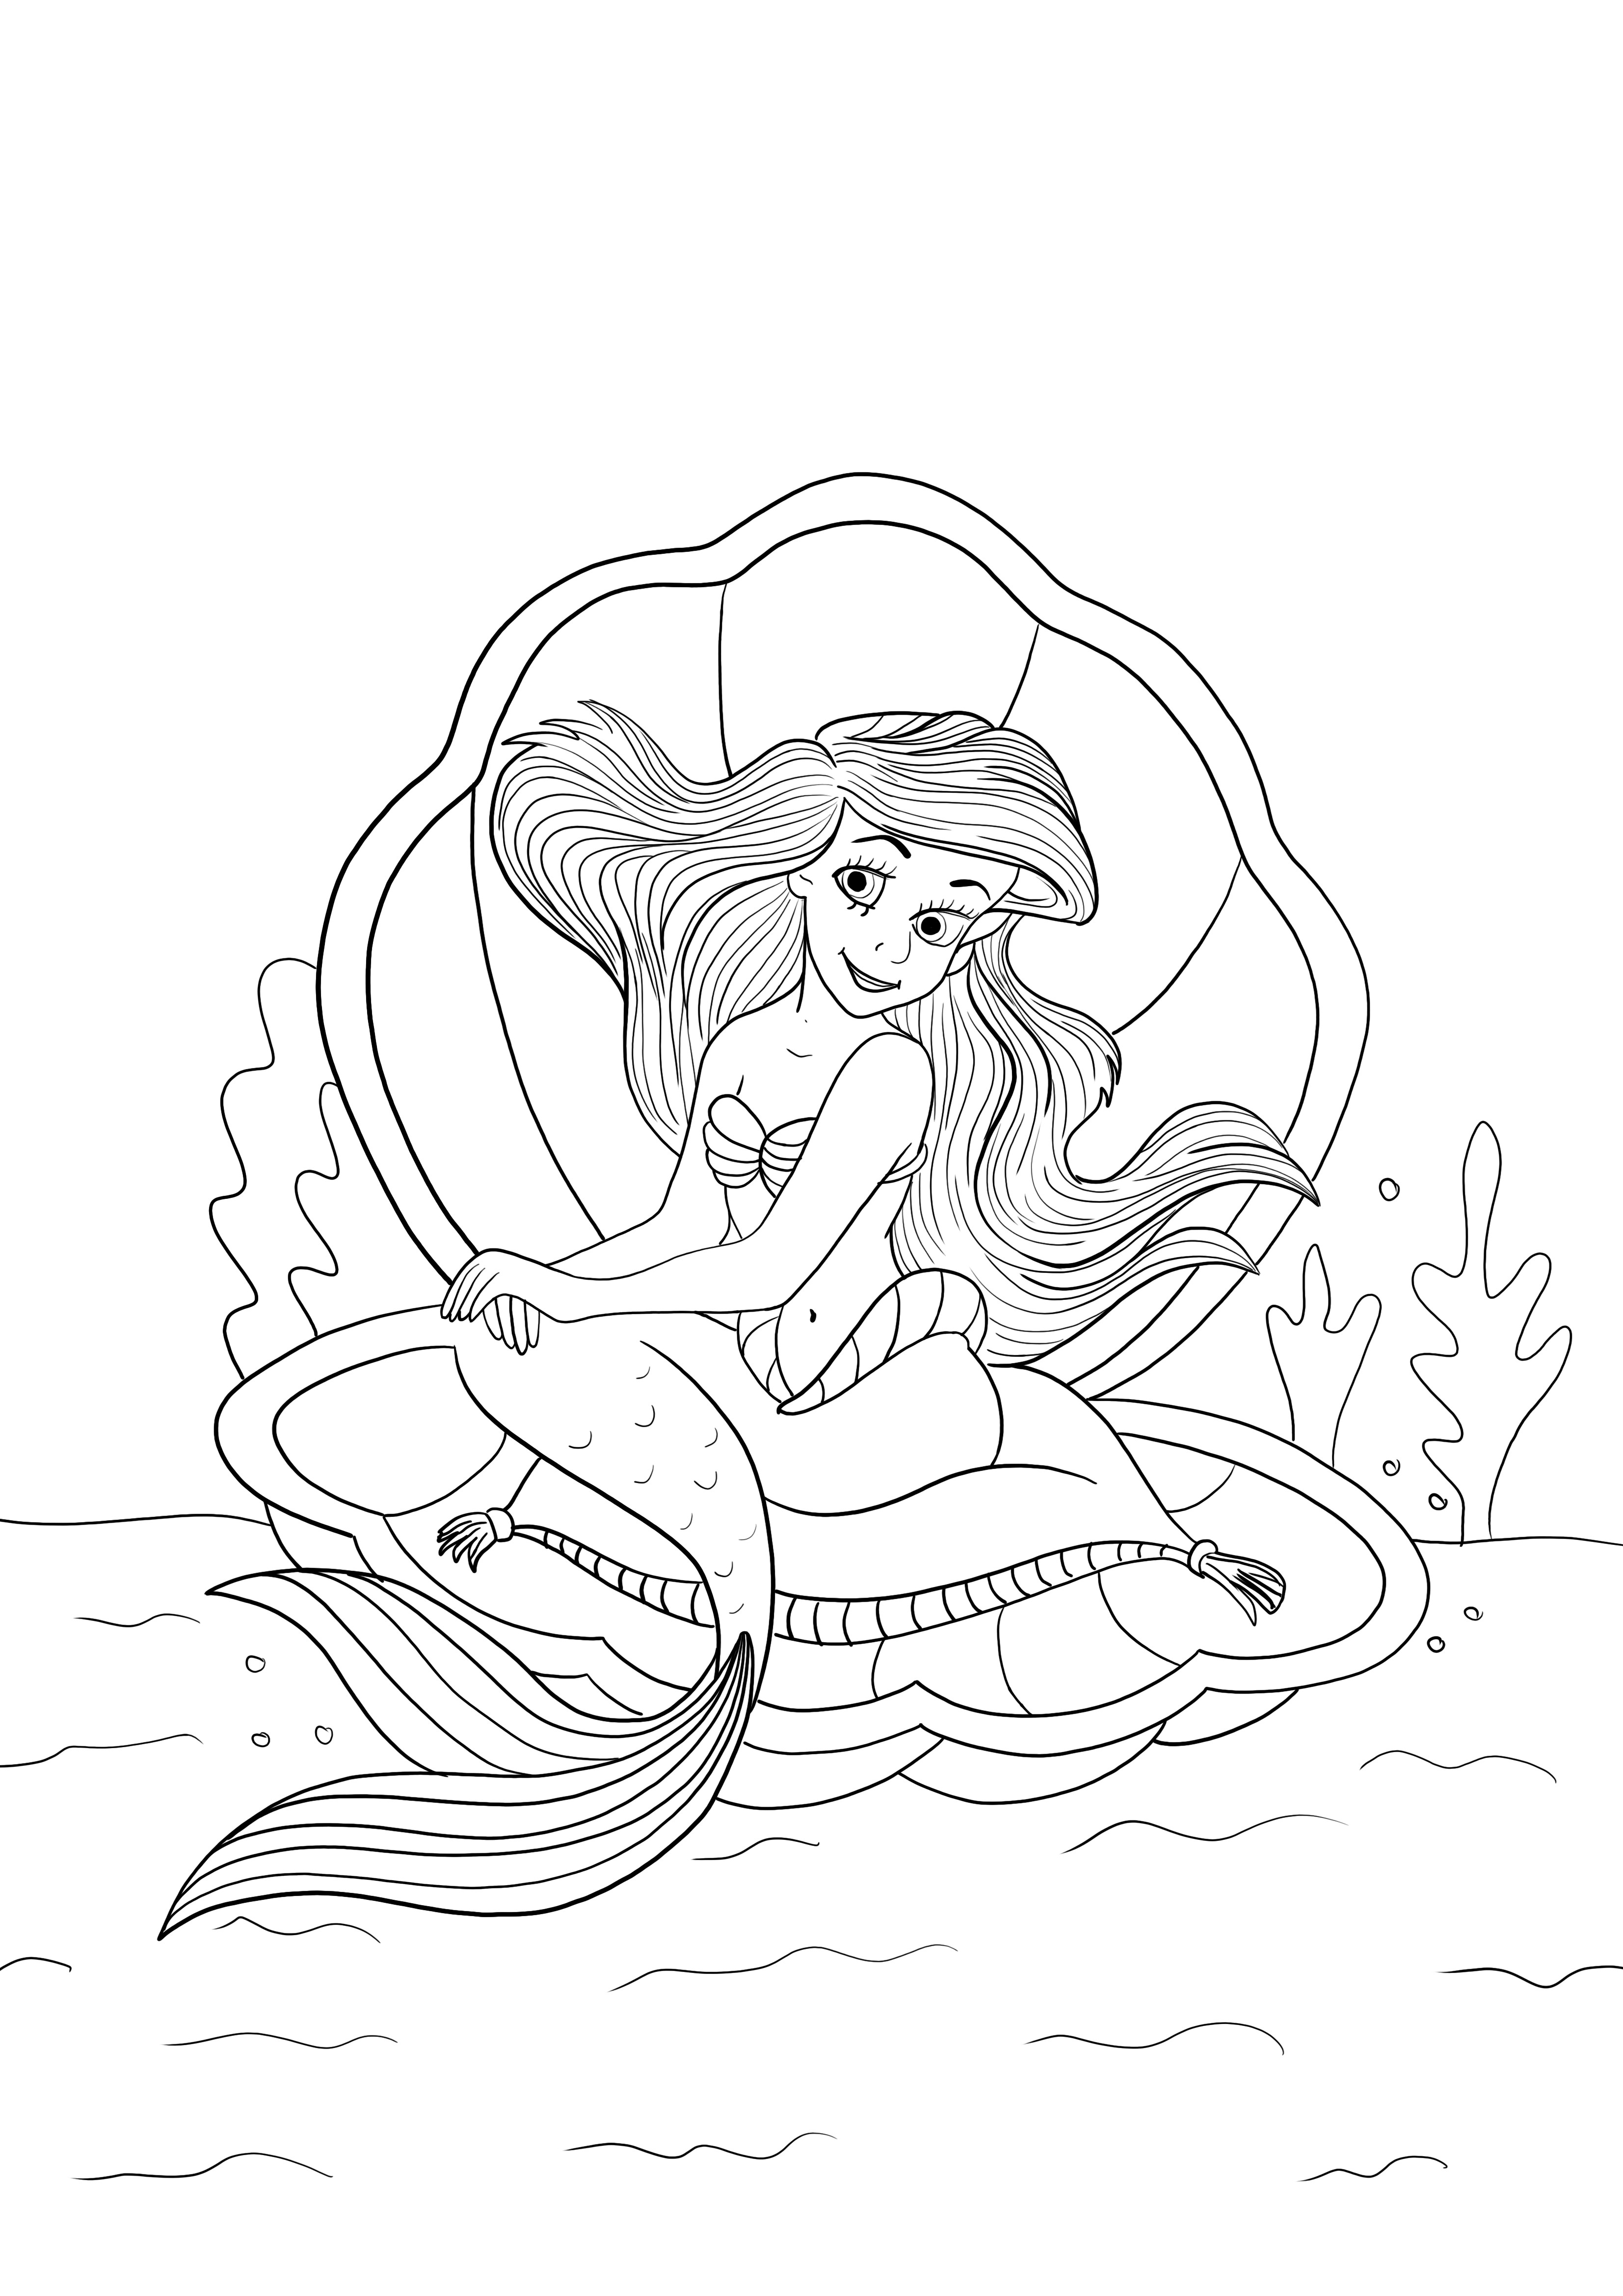 Ariel está sentado em uma concha